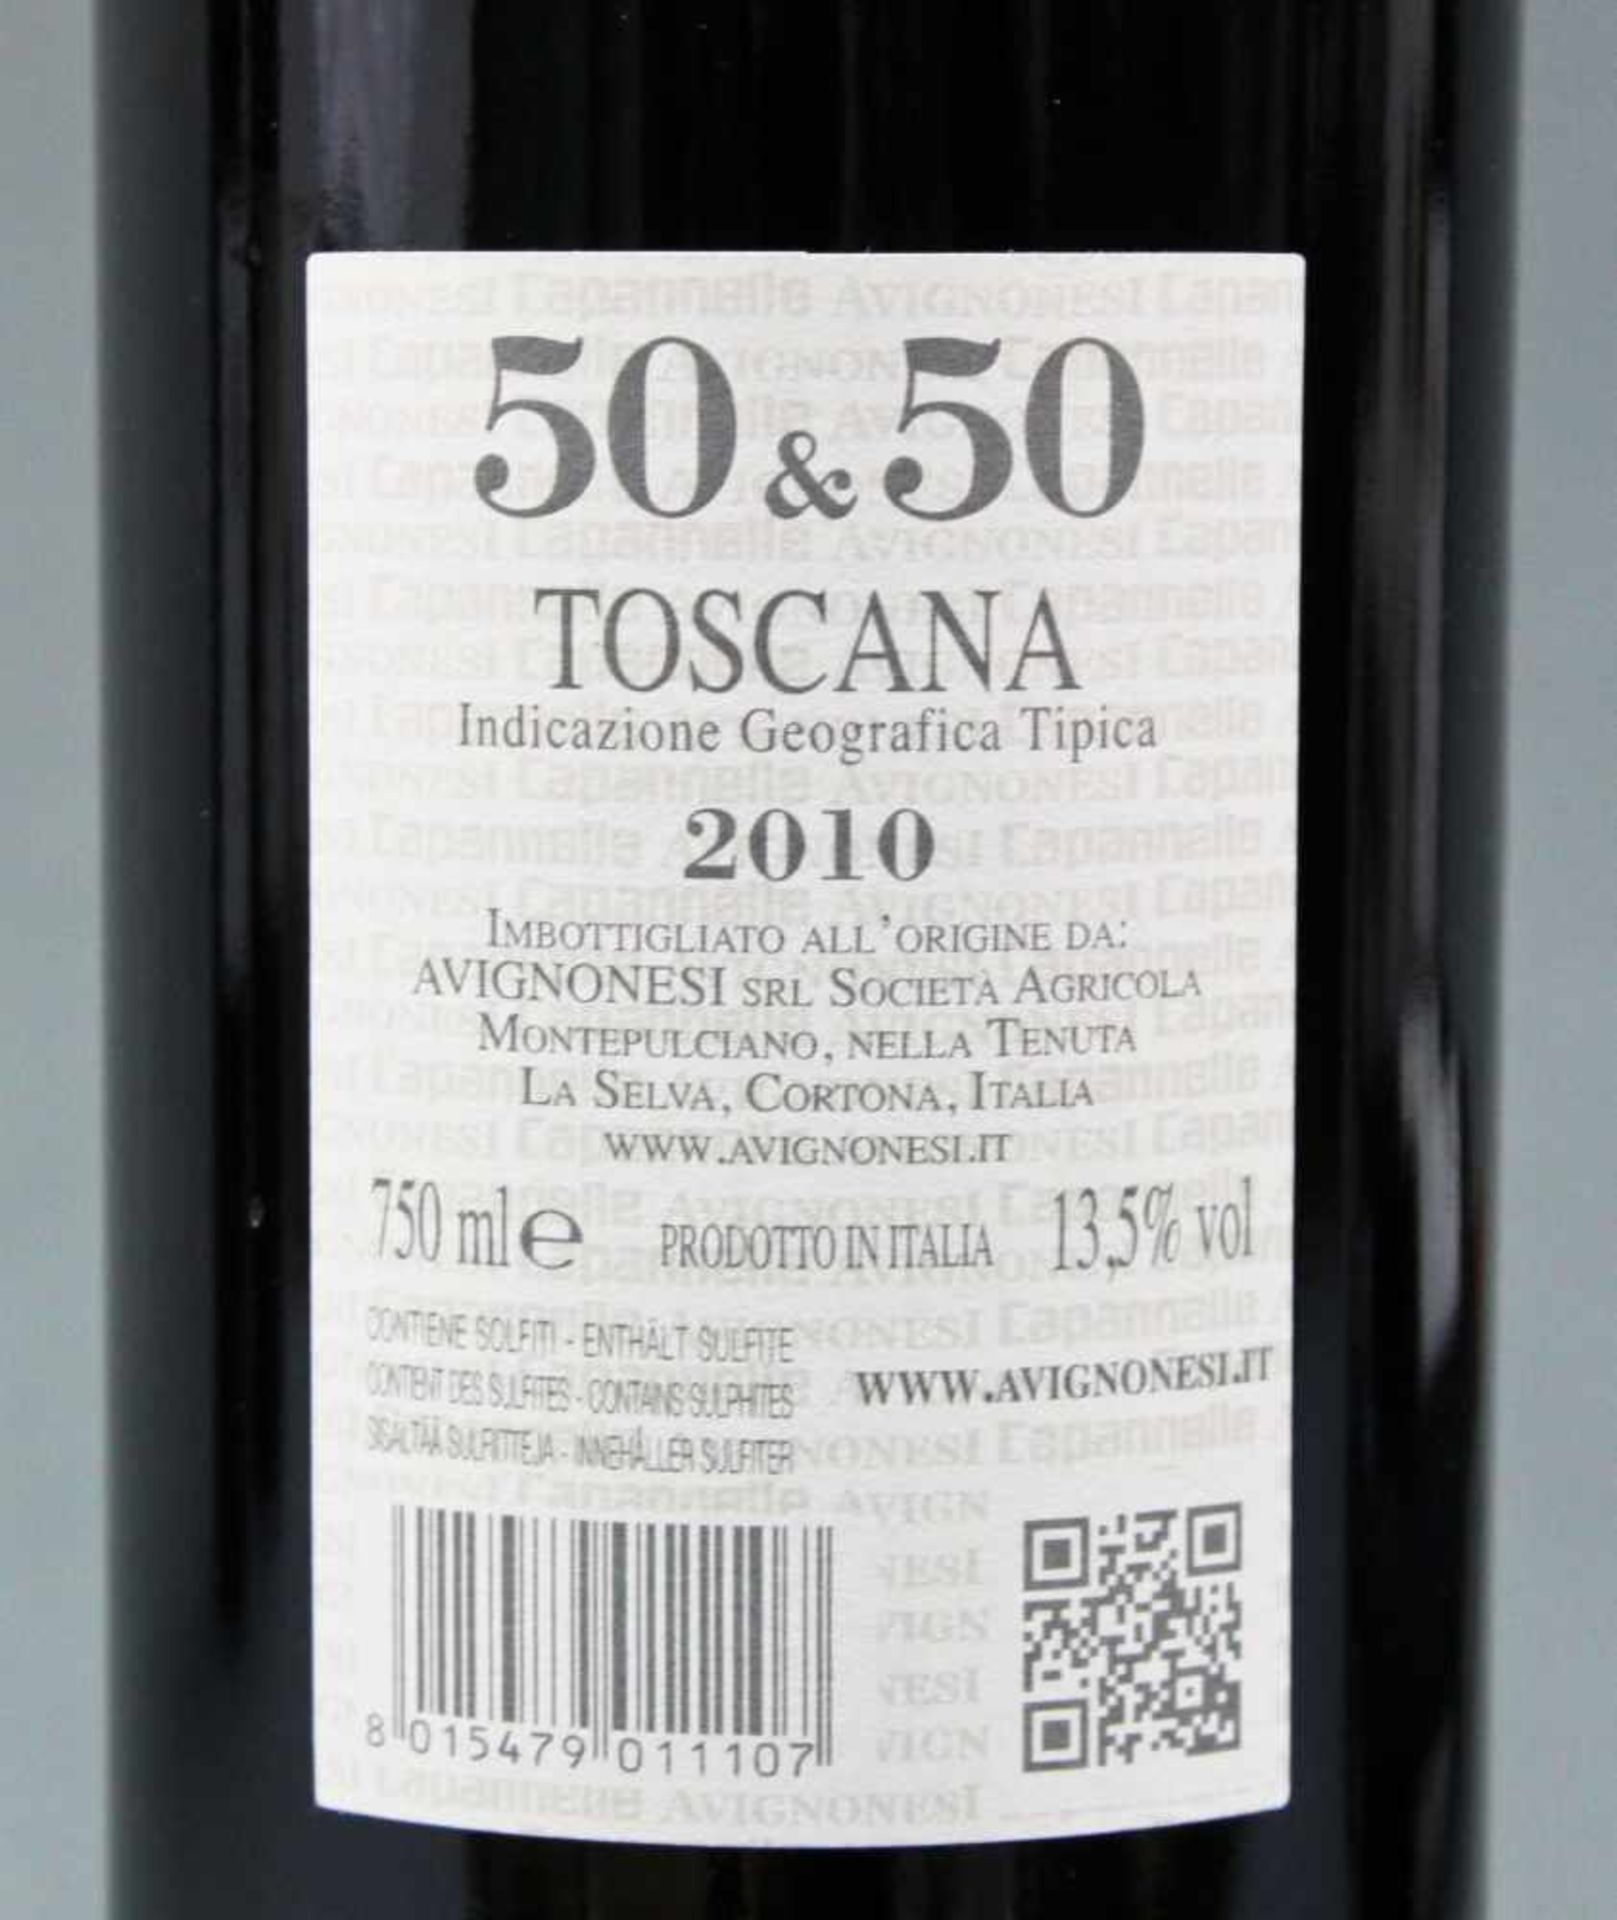 2010 "50 & 50" Avignonesi. Capannelle. Toscana. IGT.Imbottigliato all'origine da: Avignonesi srl - Bild 8 aus 8